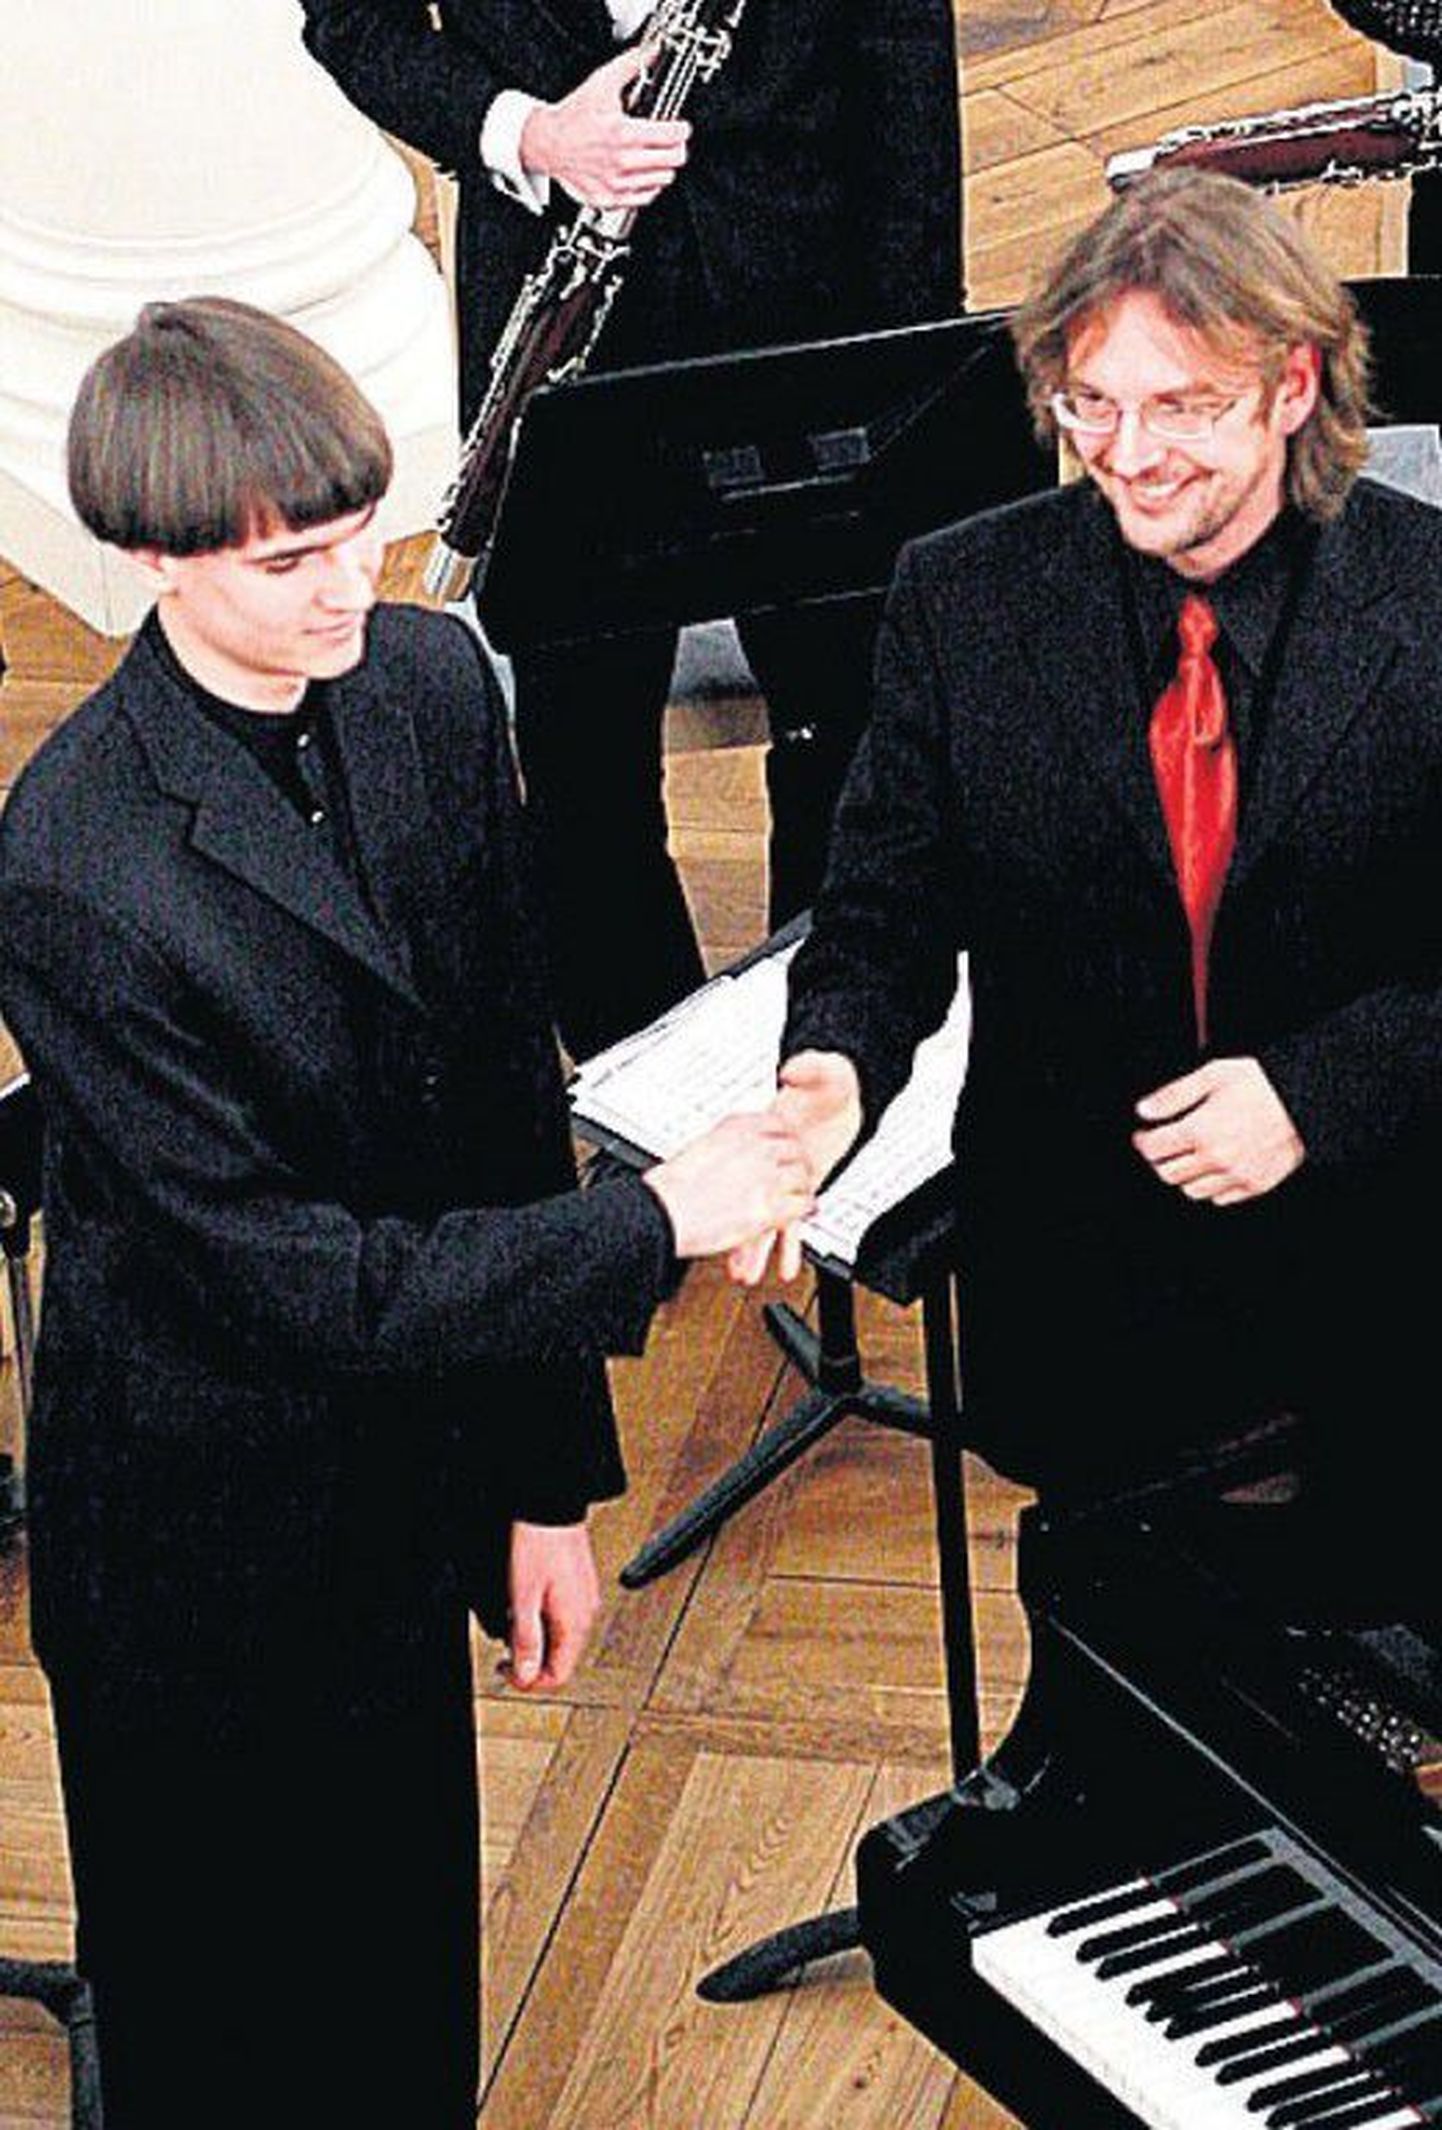 Mihkel Poll ja Toomas
Vavilov on Tartu muusikahuviliste
ees koostööd teinud
varemgi, näiteks mullusel
Mozarti pidunädalal ülikooli
aulas.